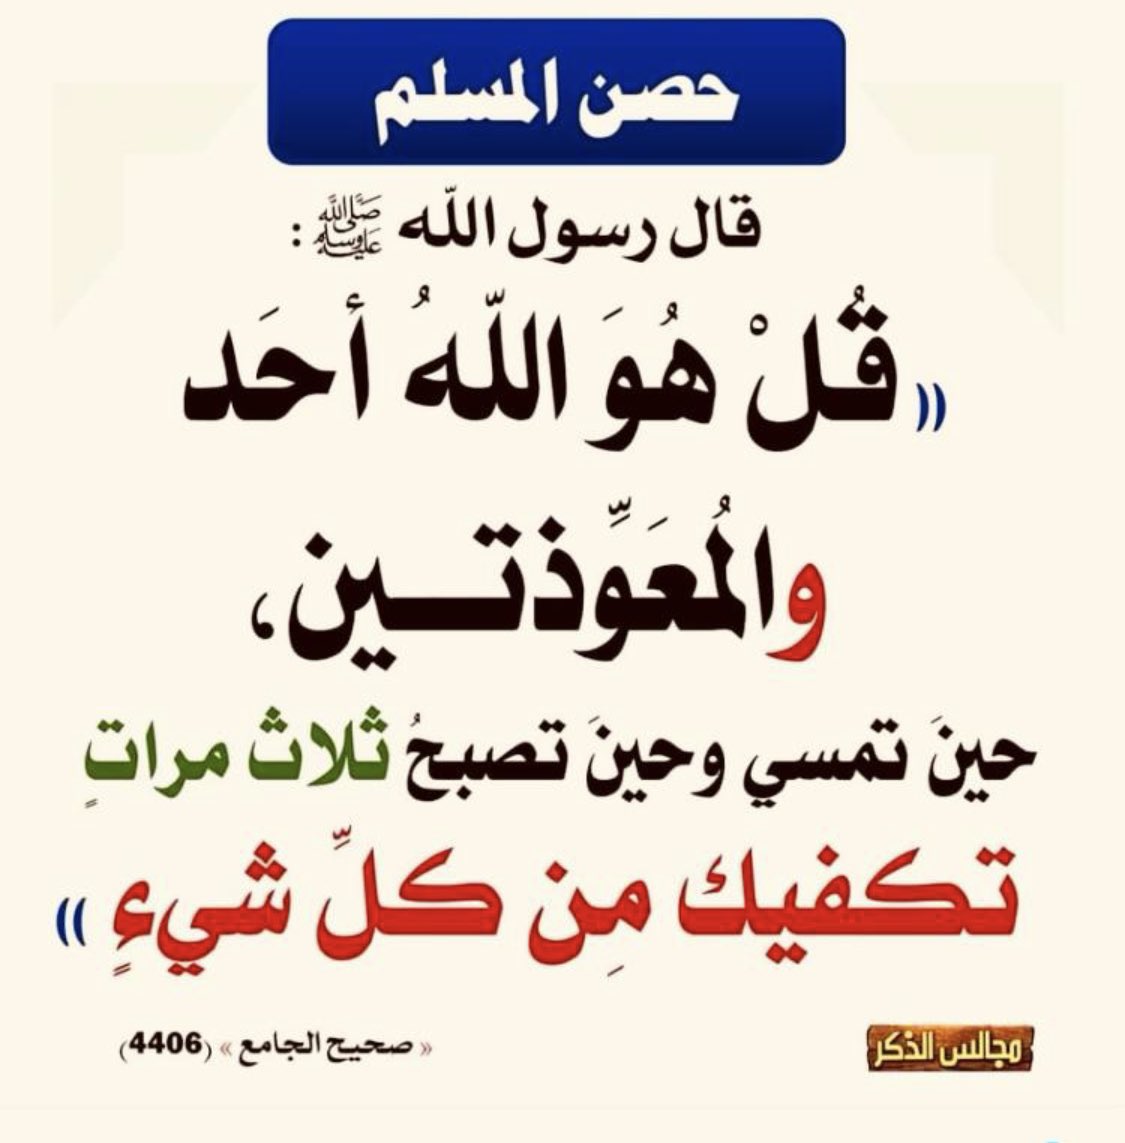 محب القرآن الكريم والسنه🇸🇦 (@waheen30) on Twitter photo 2024-05-24 19:21:52